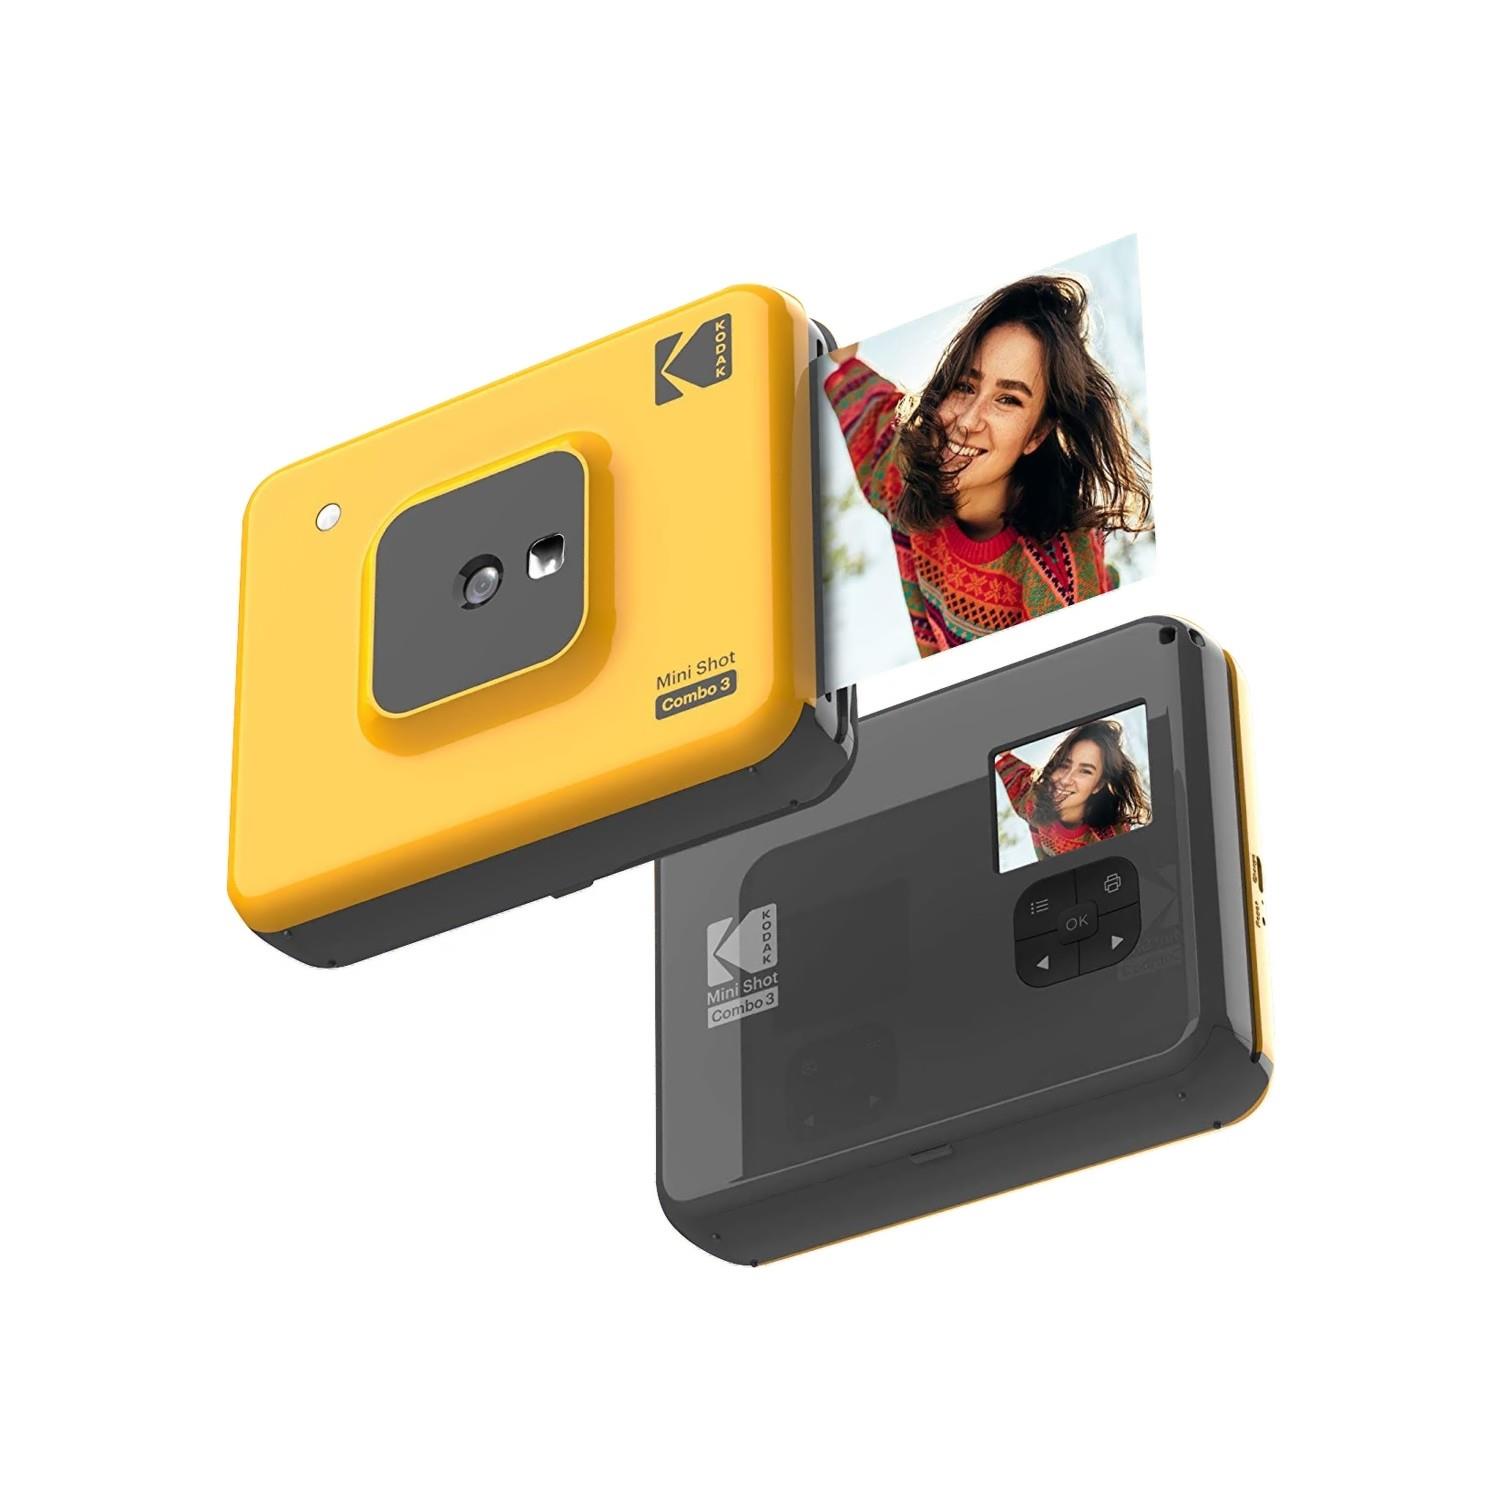 Kodak Mini Shot Combo 3 - C300 Anında Baskı Dijital Fotoğraf Makinesi Sarı (ICRG-330 Hediyeli)